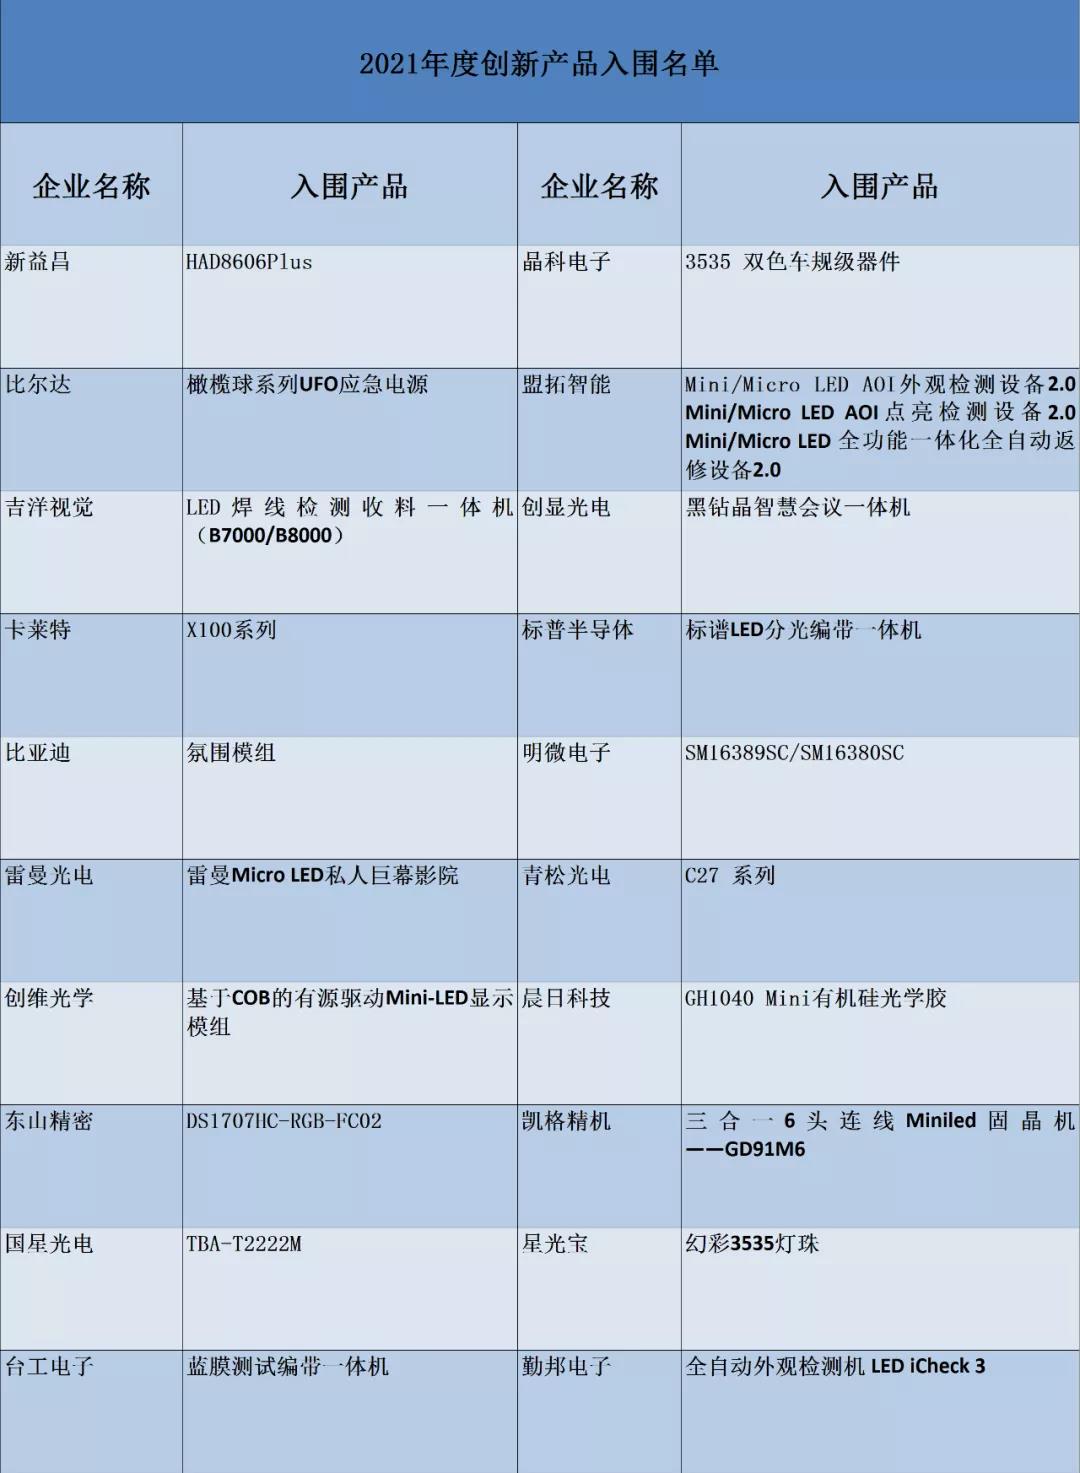 【兆元光电冠名】2021高工金球奖网络投票评选入围名单公示！